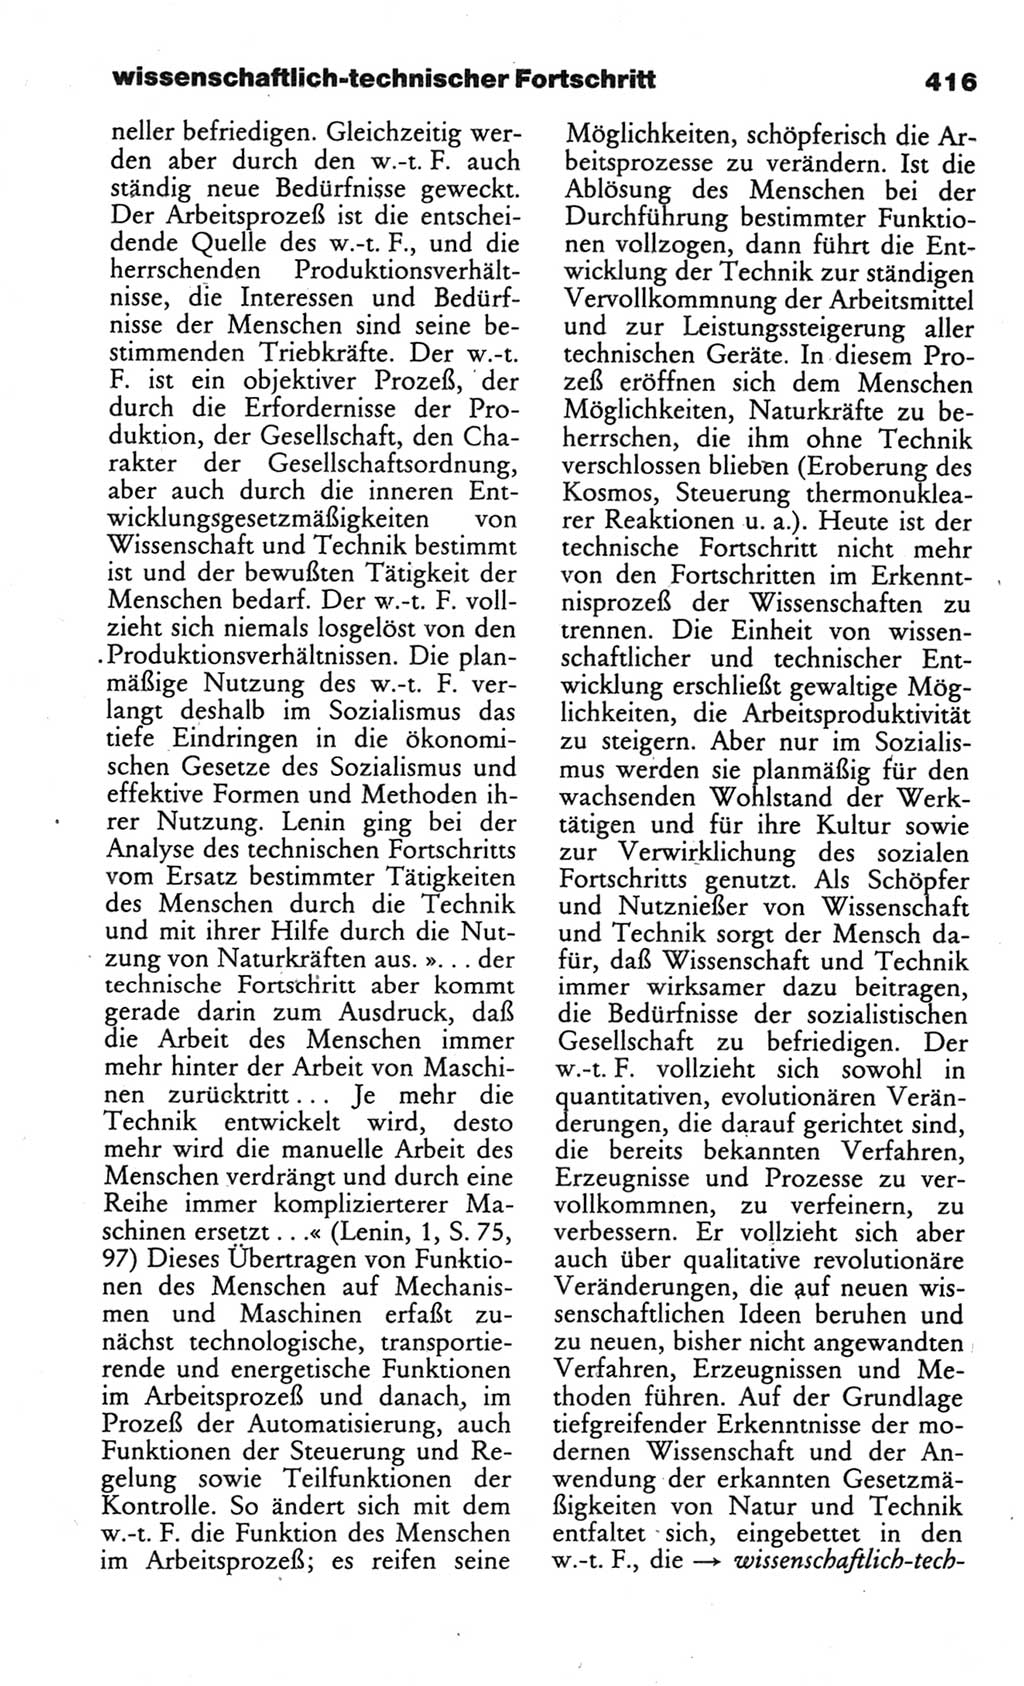 Wörterbuch des wissenschaftlichen Kommunismus [Deutsche Demokratische Republik (DDR)] 1984, Seite 416 (Wb. wiss. Komm. DDR 1984, S. 416)